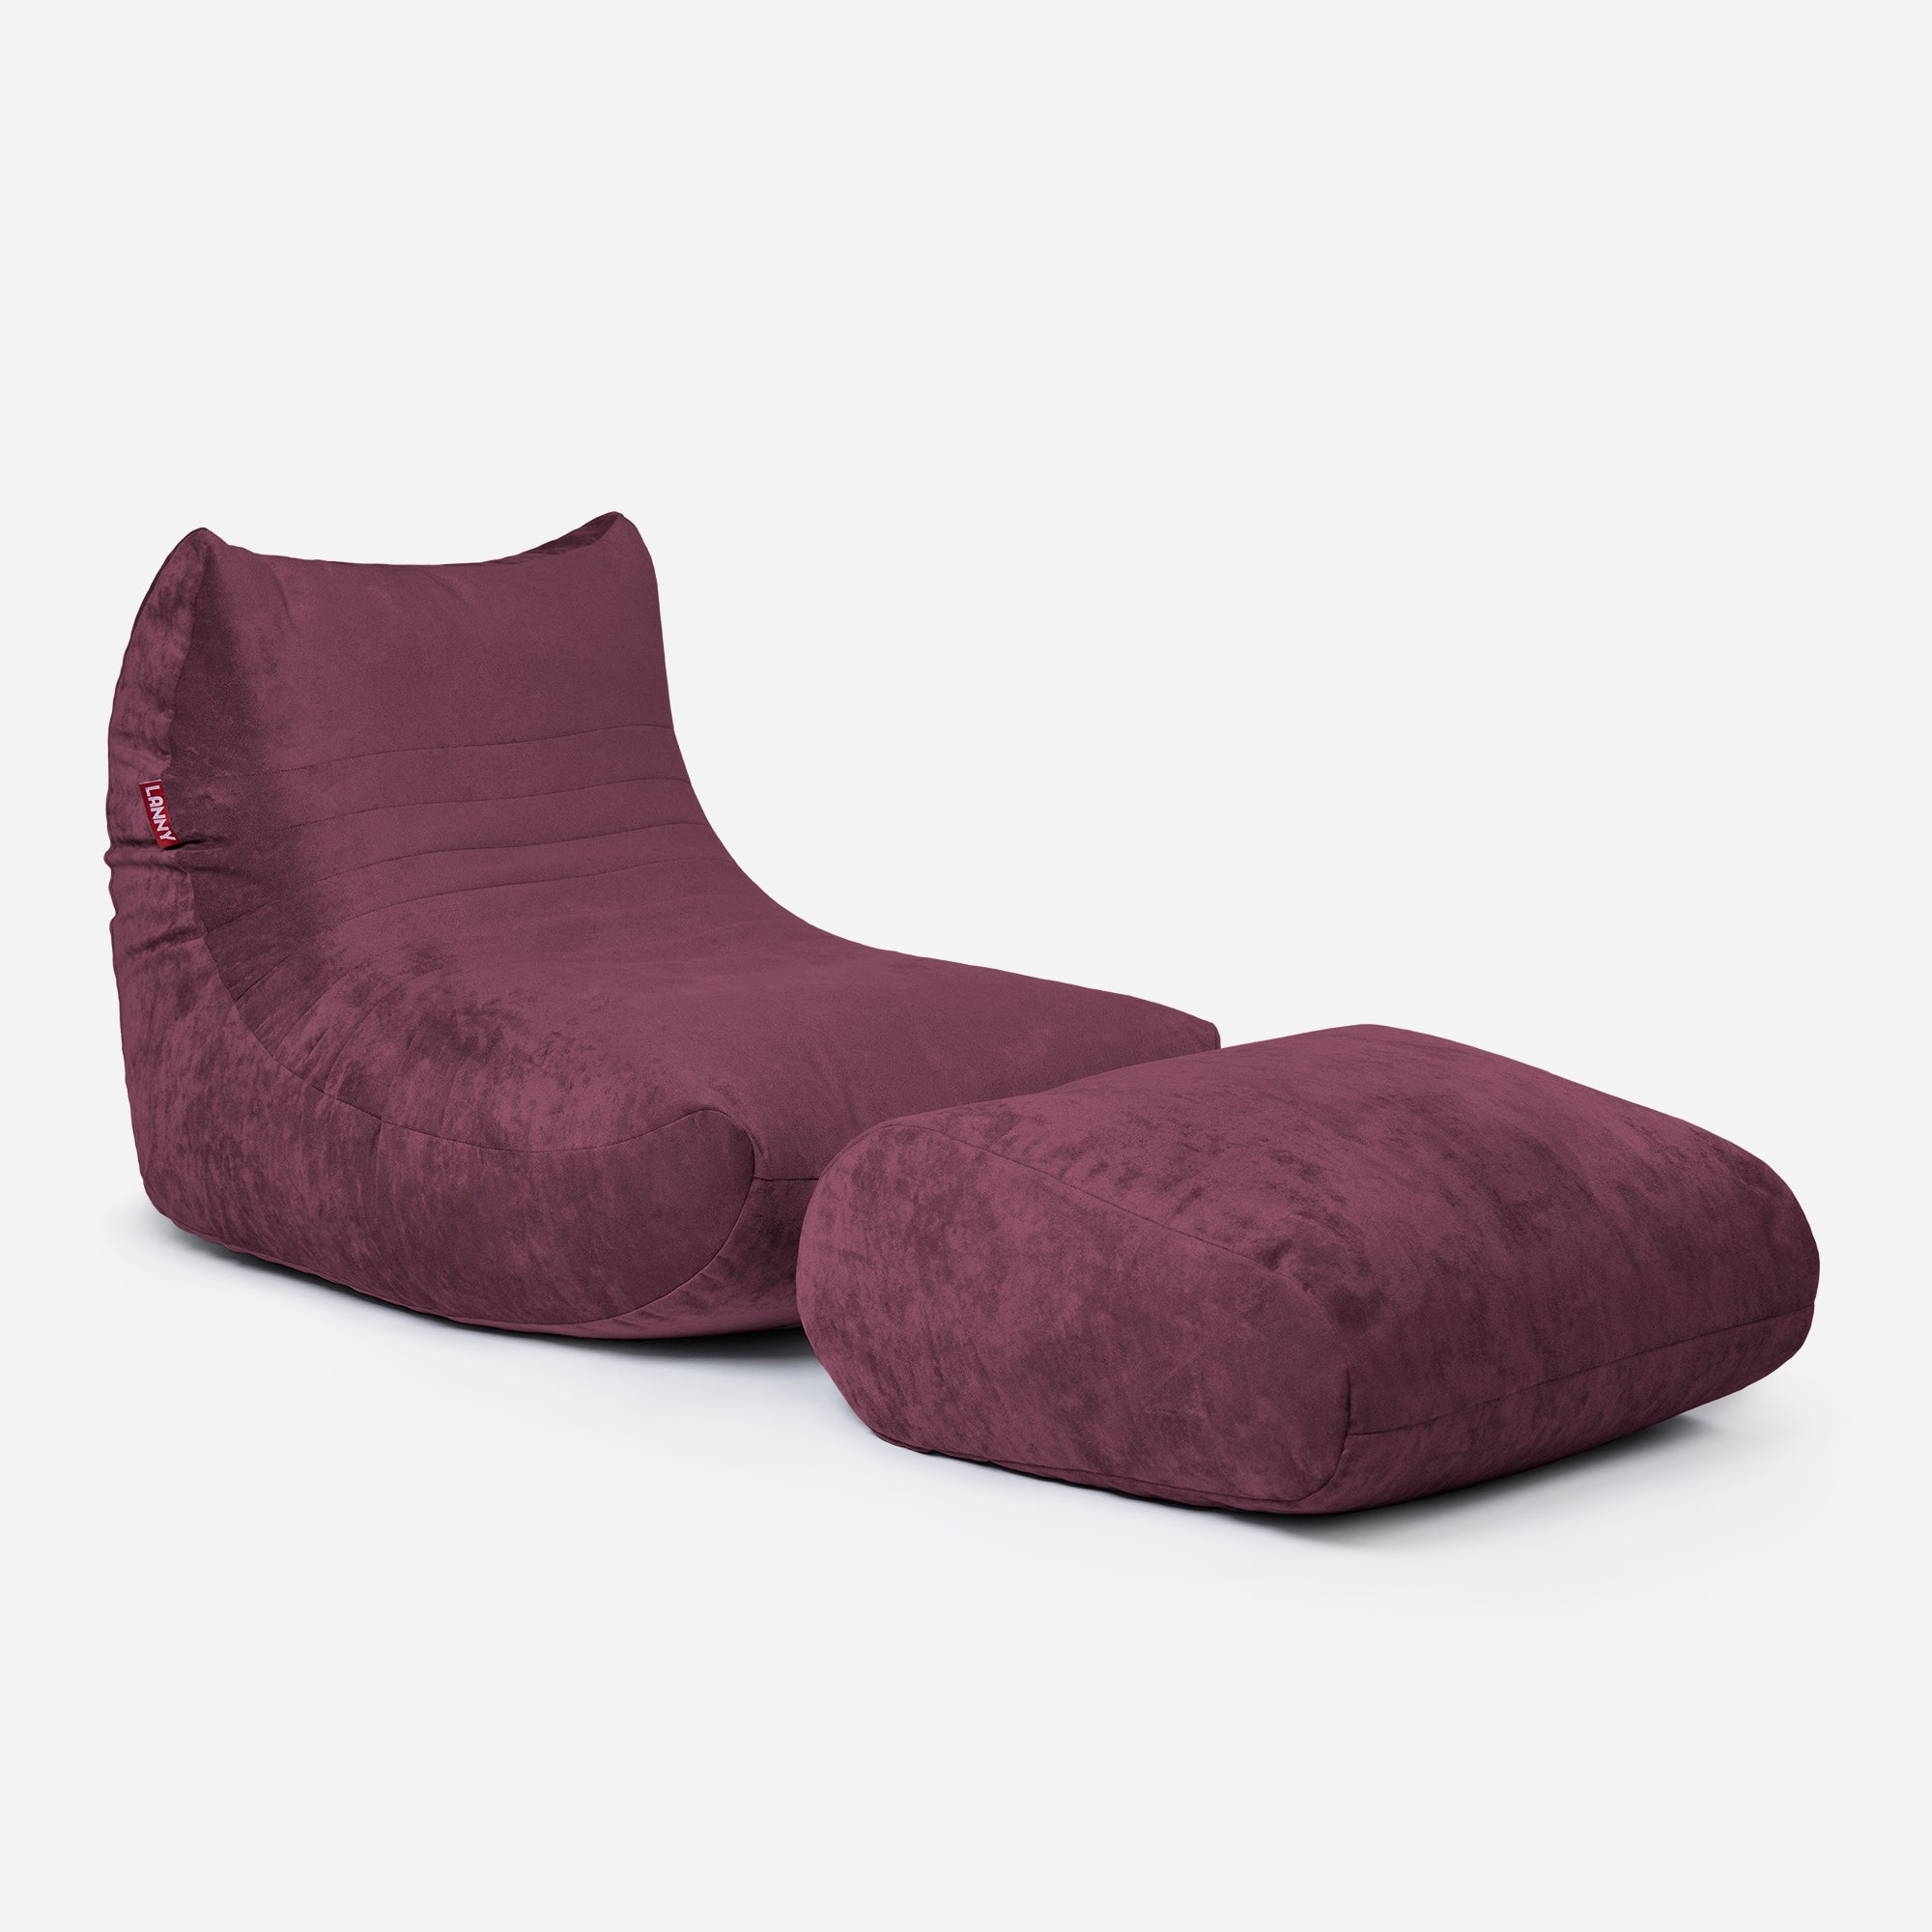 Curvy Aldo Purple Bean Bag Chair